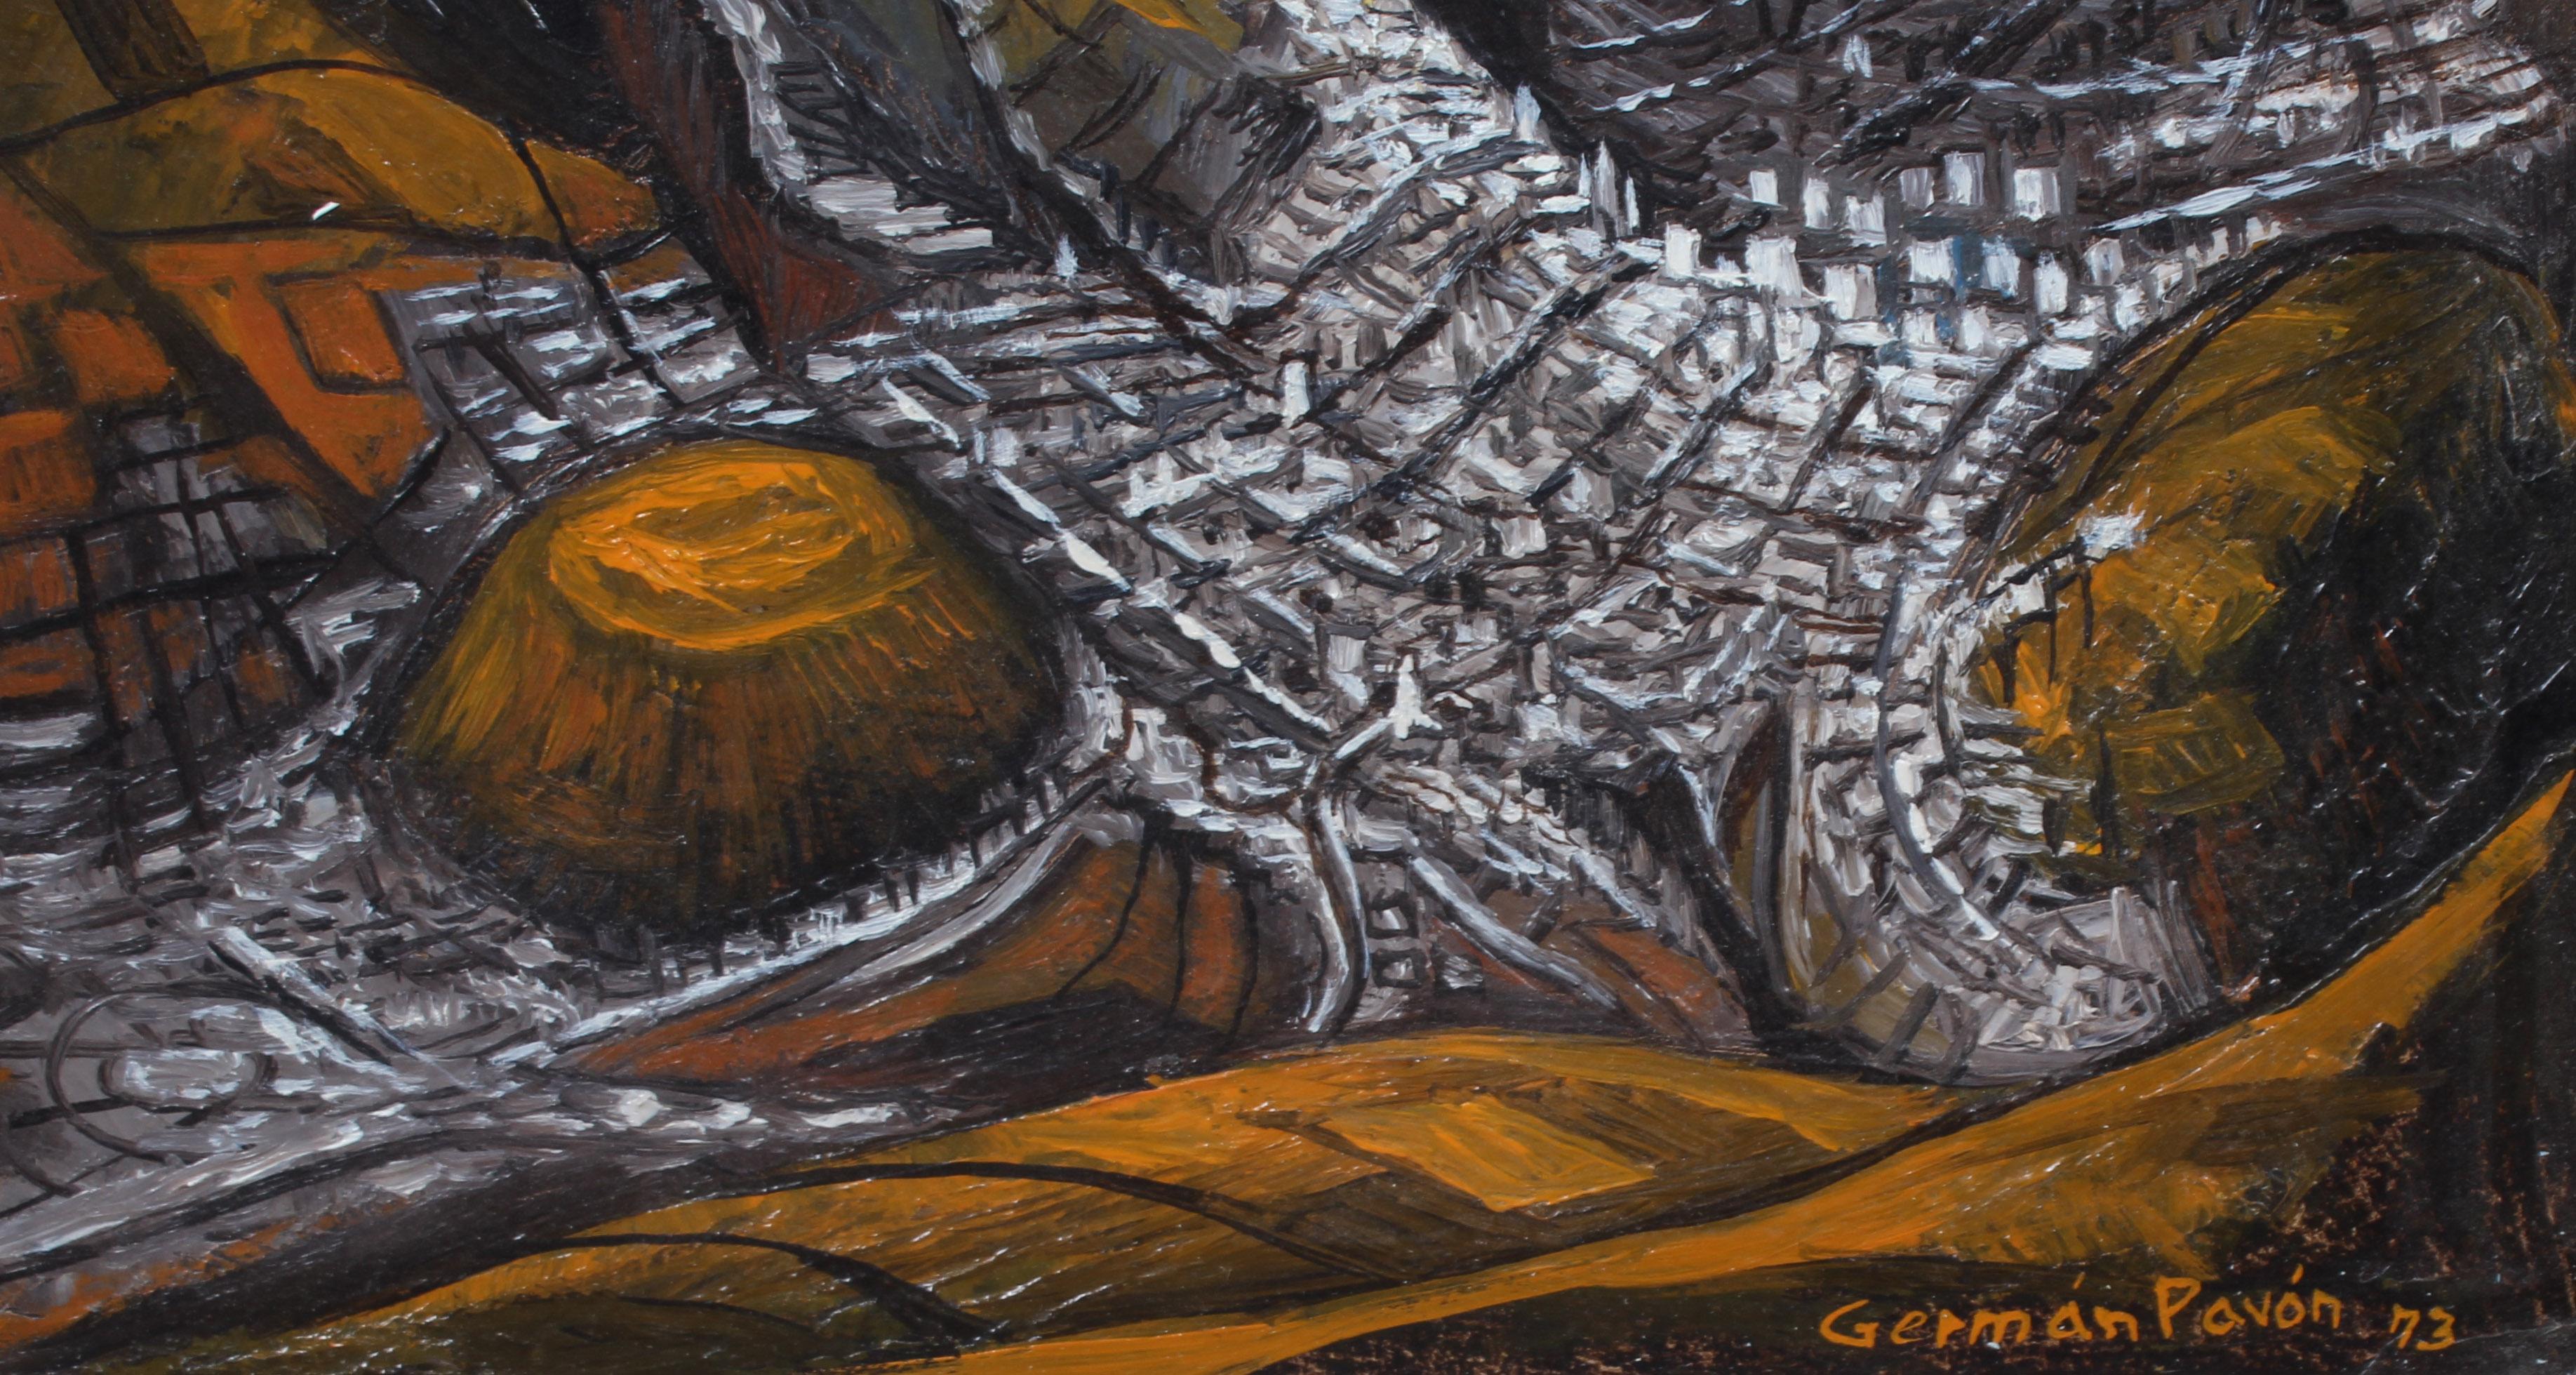 Une peinture à l'huile originale de l'artiste latino-américain classé German Pavon (né en 1933), qui a créé de nombreuses œuvres publiques dans son pays d'origine, l'Équateur.  Ce fabuleux tableau représentant de manière abstraite le volcan